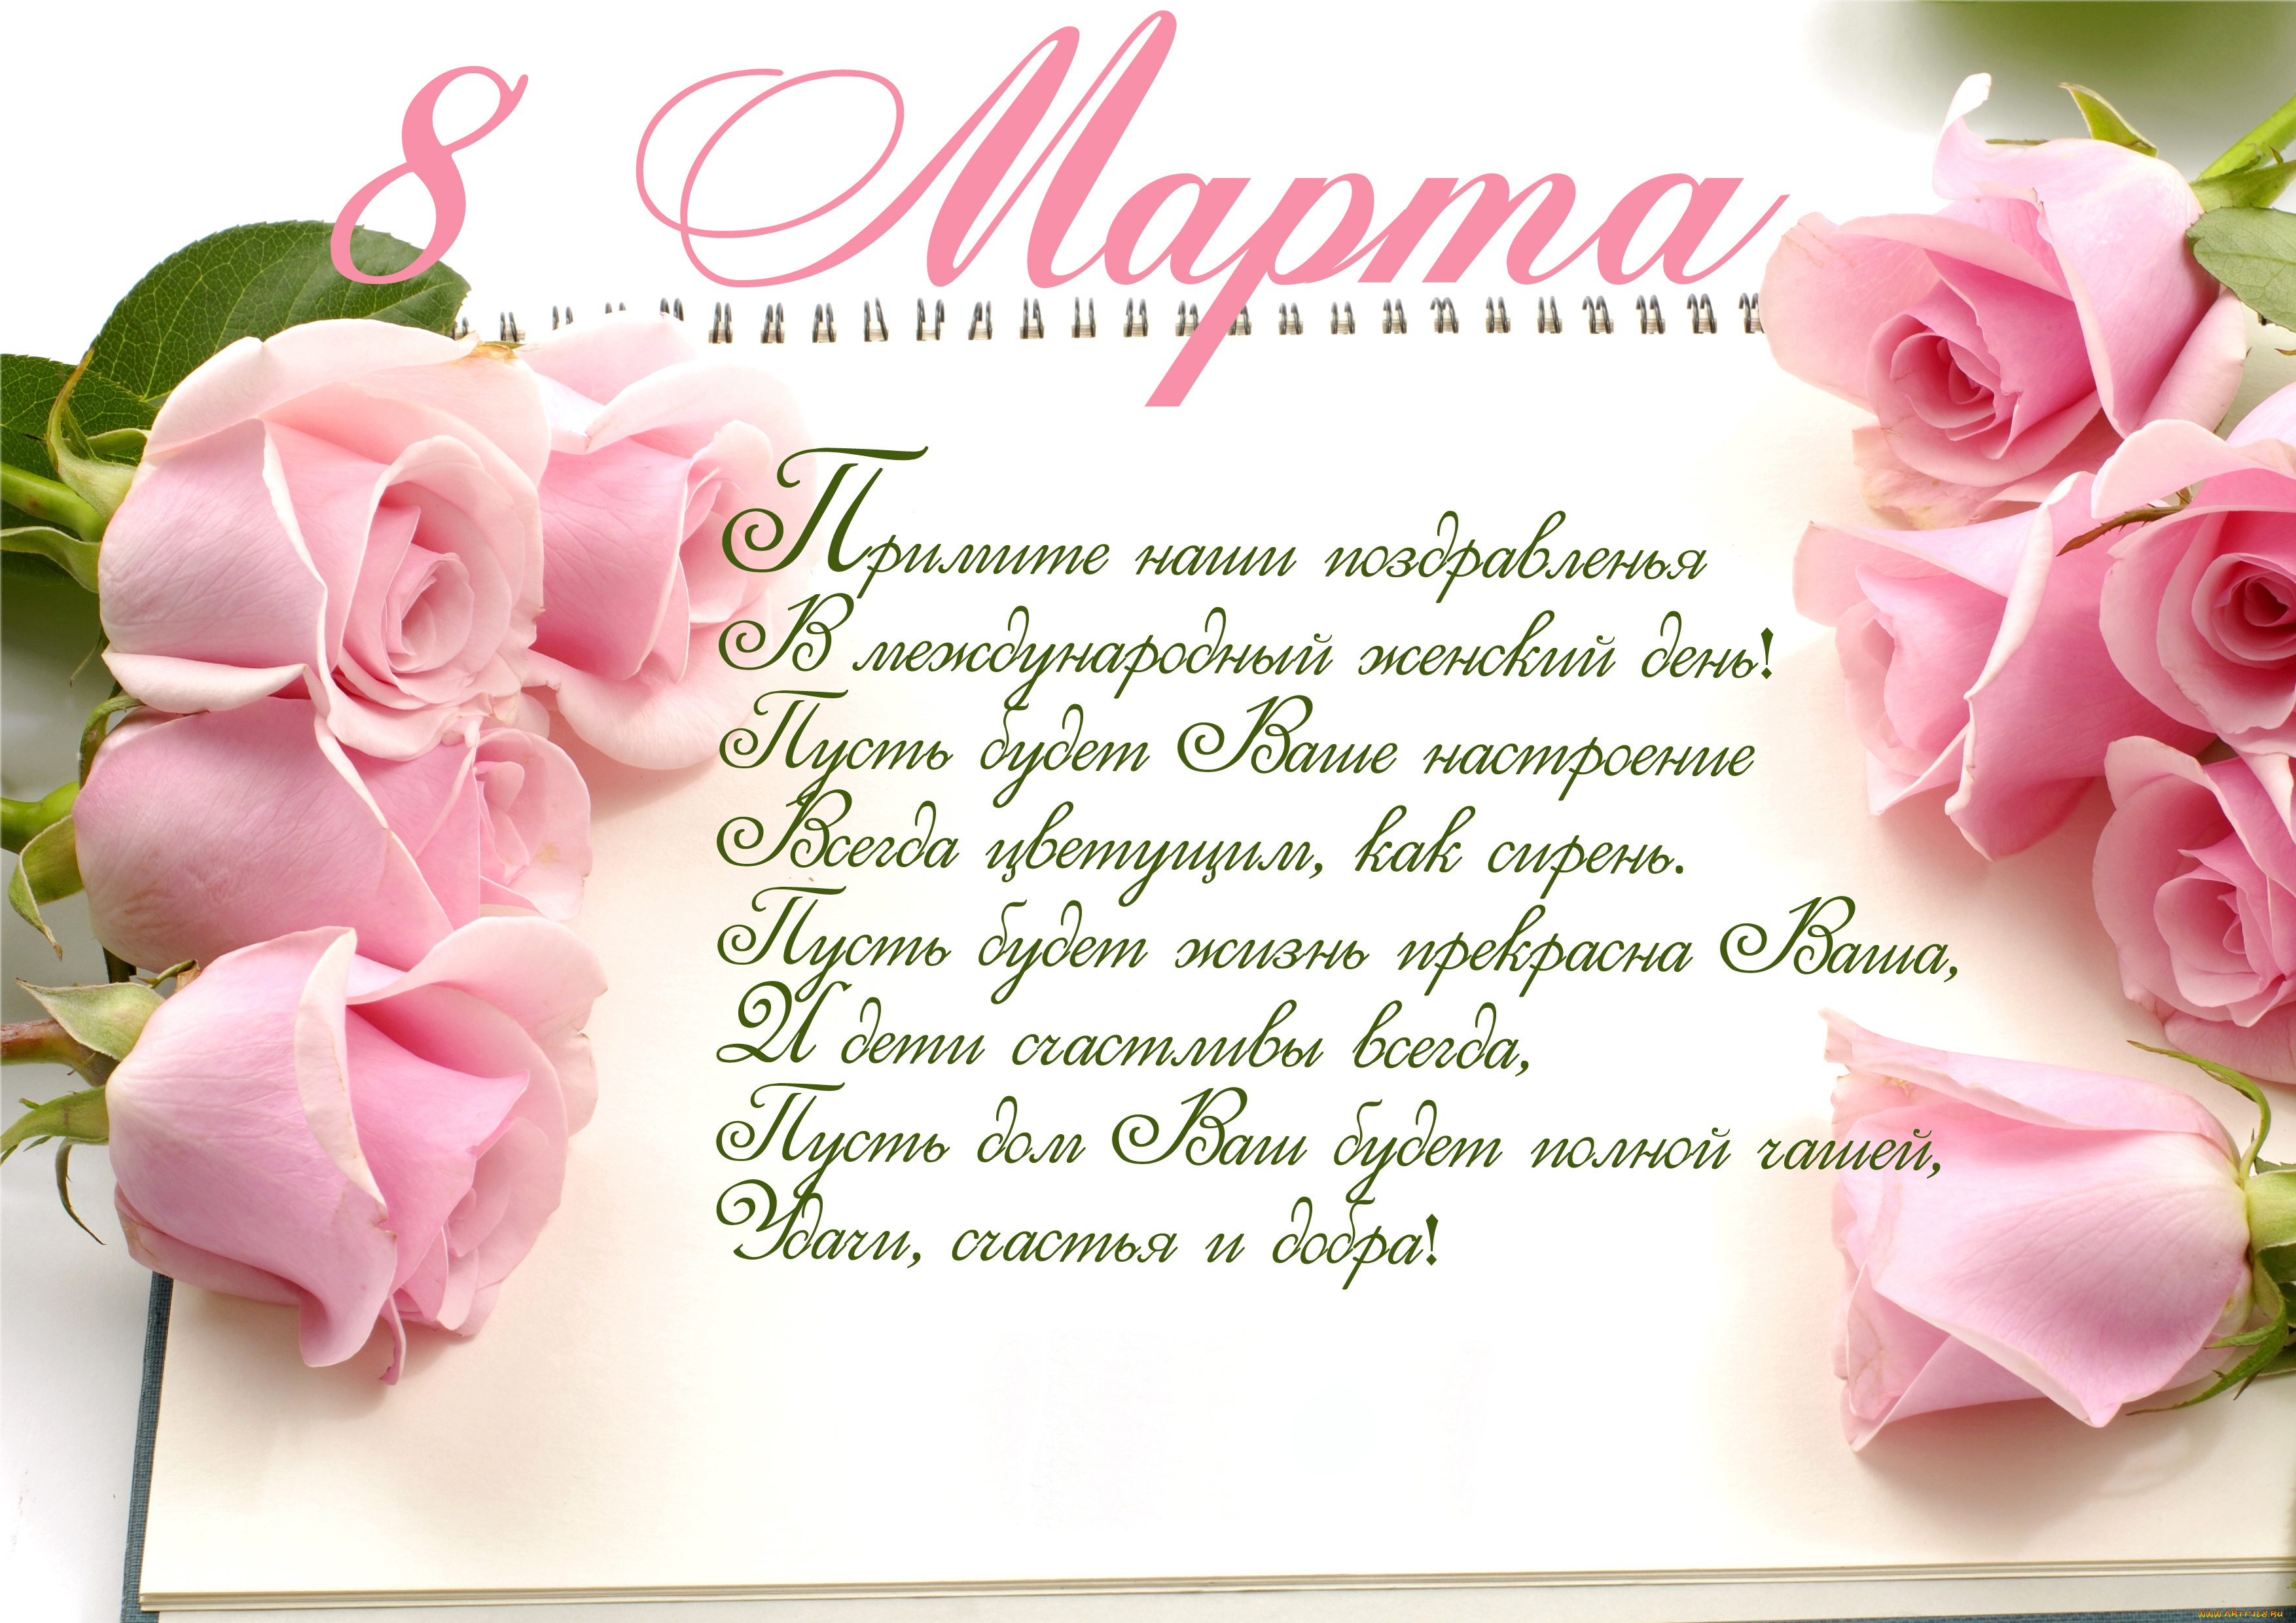 праздничные, международный, женский, день, -, 8, марта, весна, розы, roses, holiday, spring, romantic, поздравление, 8, марта